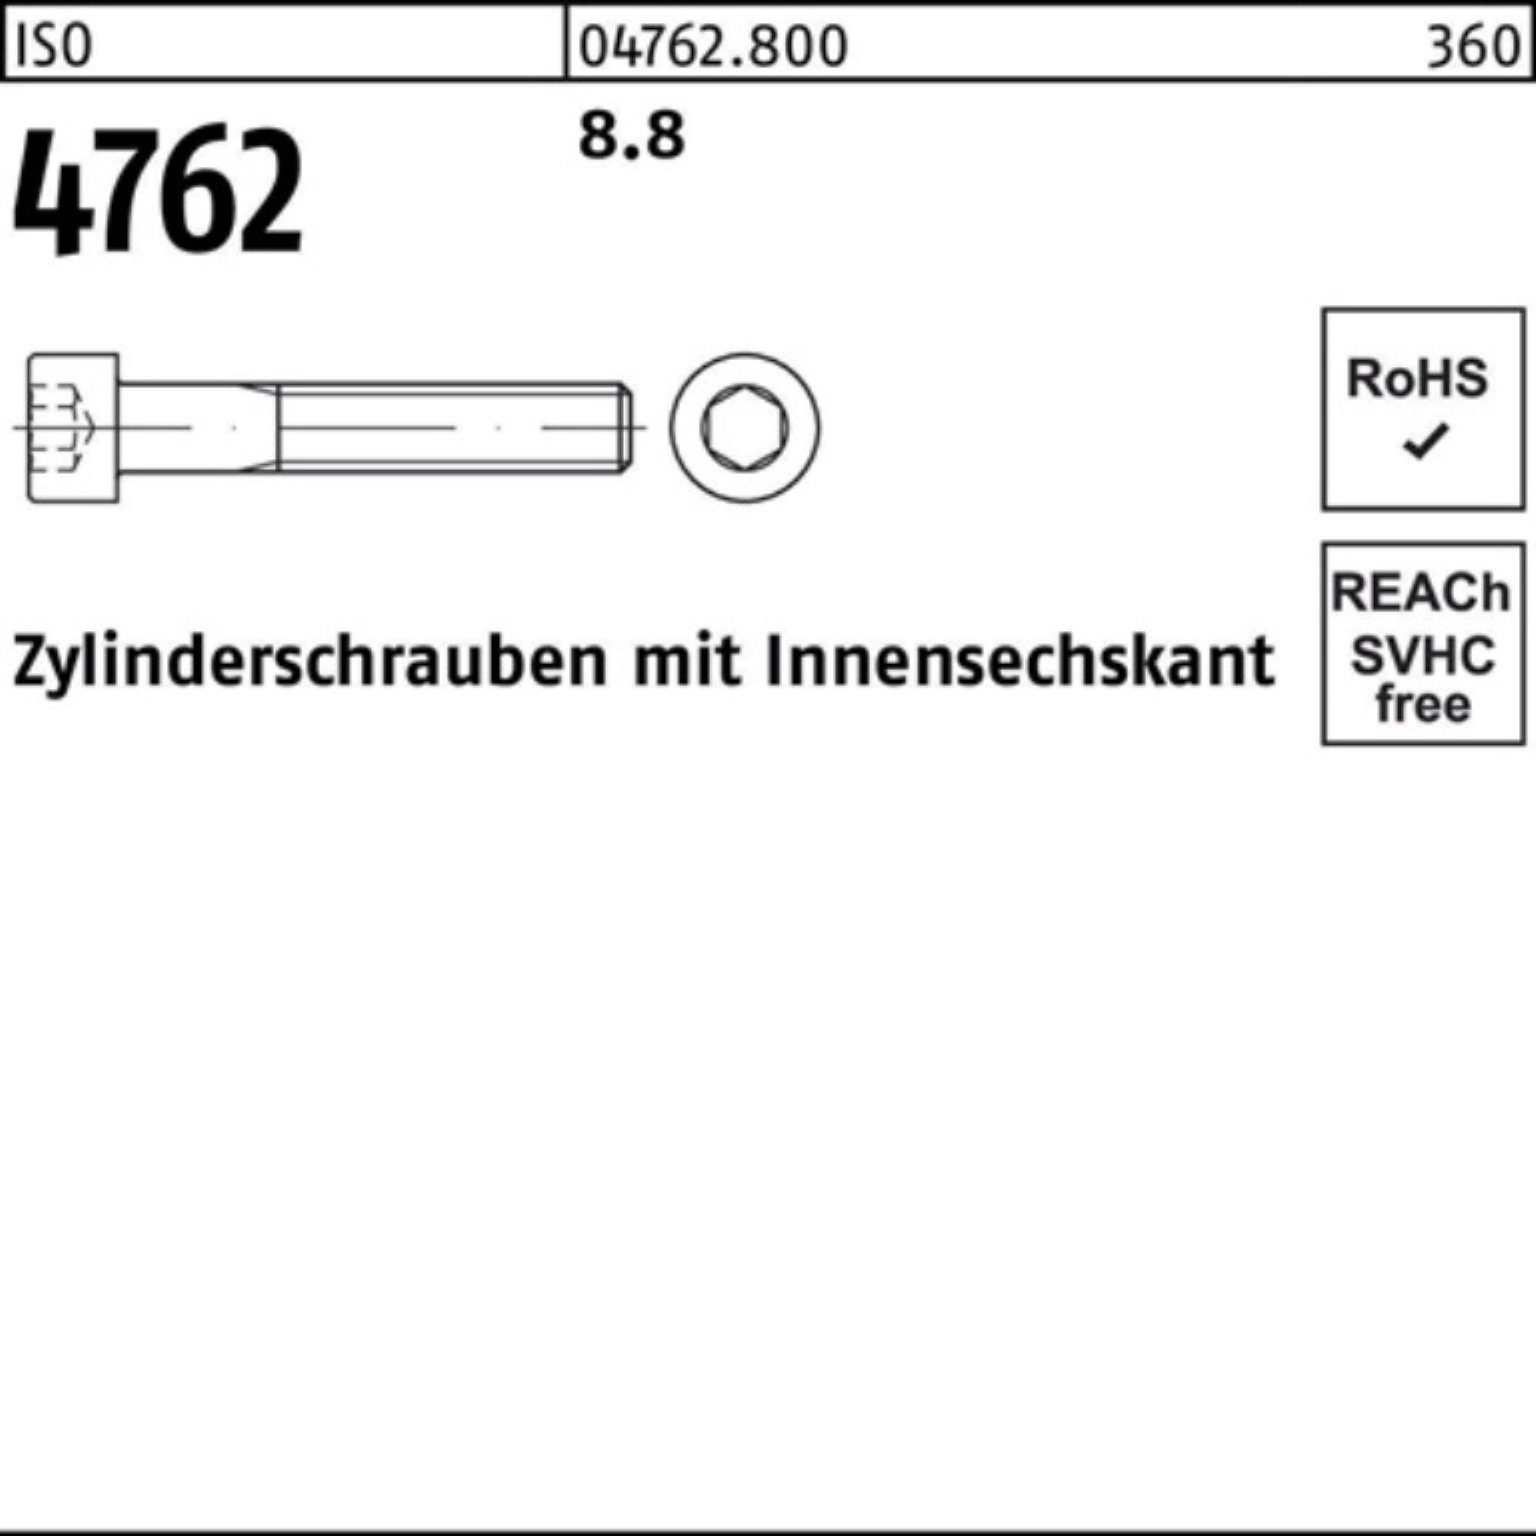 Zylinderschraube Innen-6kt M27x 4762 Zylinderschraube 8.8 1 100er Pack Stück 260 I ISO Reyher